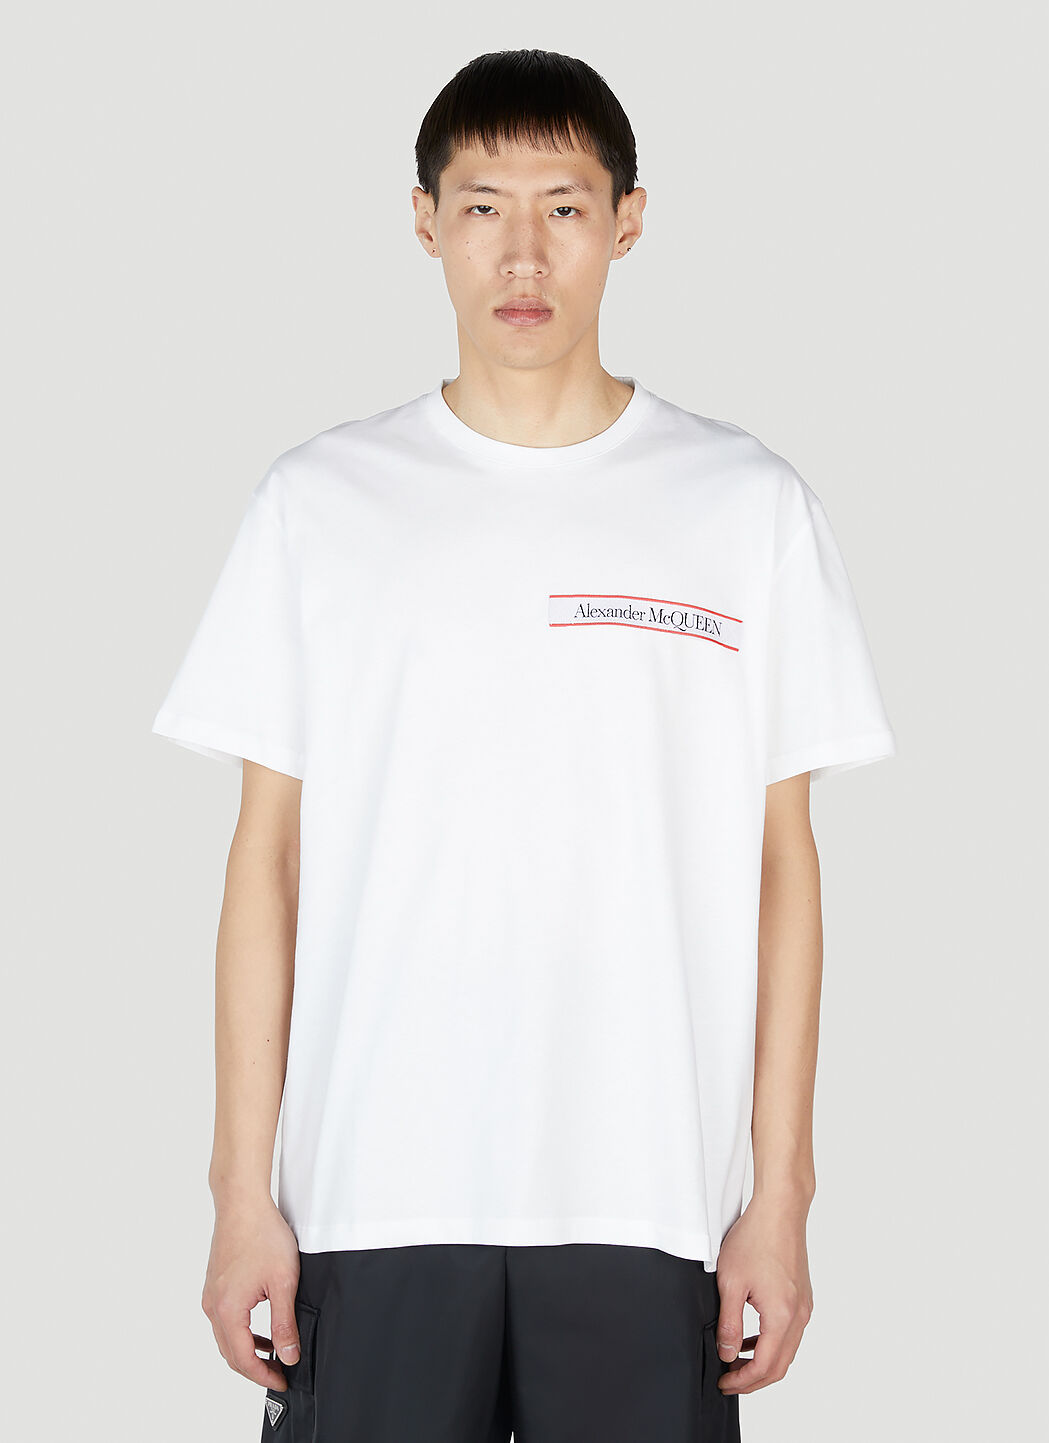 Alexander McQueen 로고 테이프 티셔츠 화이트 amq0149025